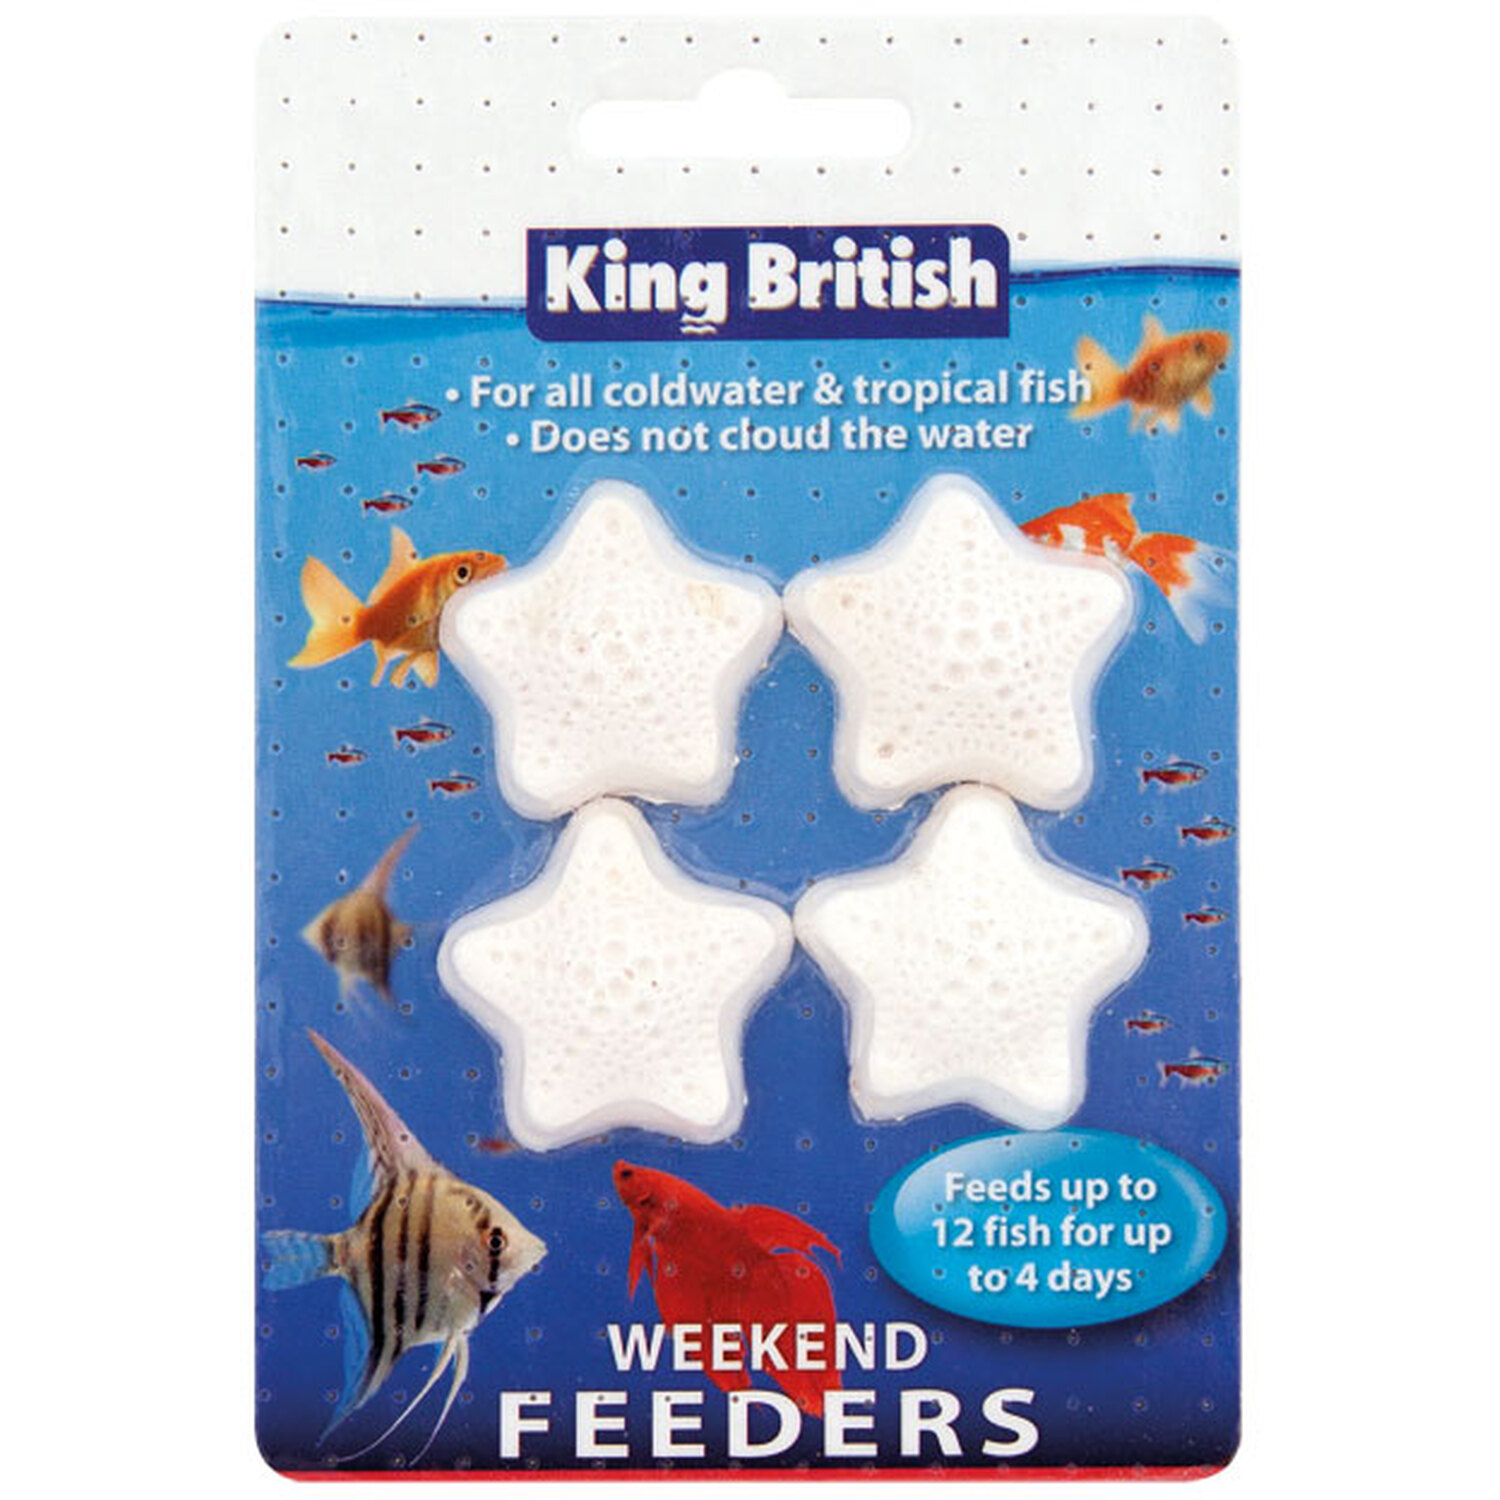 Pack of 4 King British Weekend Feeders Image